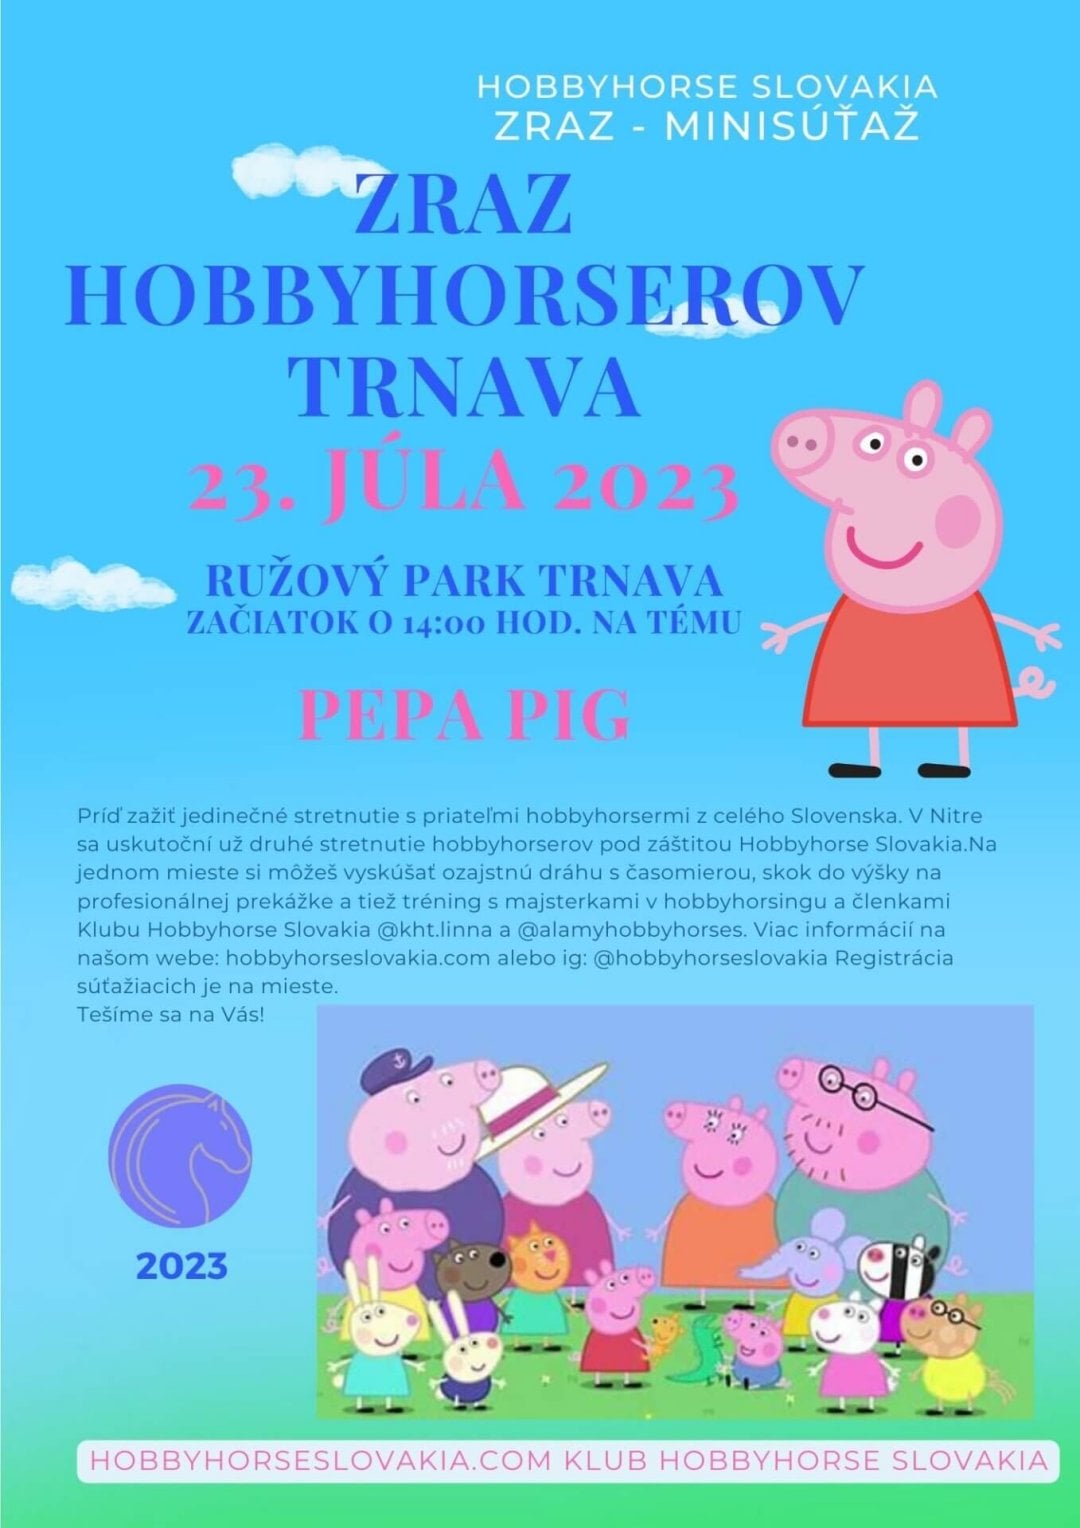 Hh Reunion In Trnava Pepa Pig